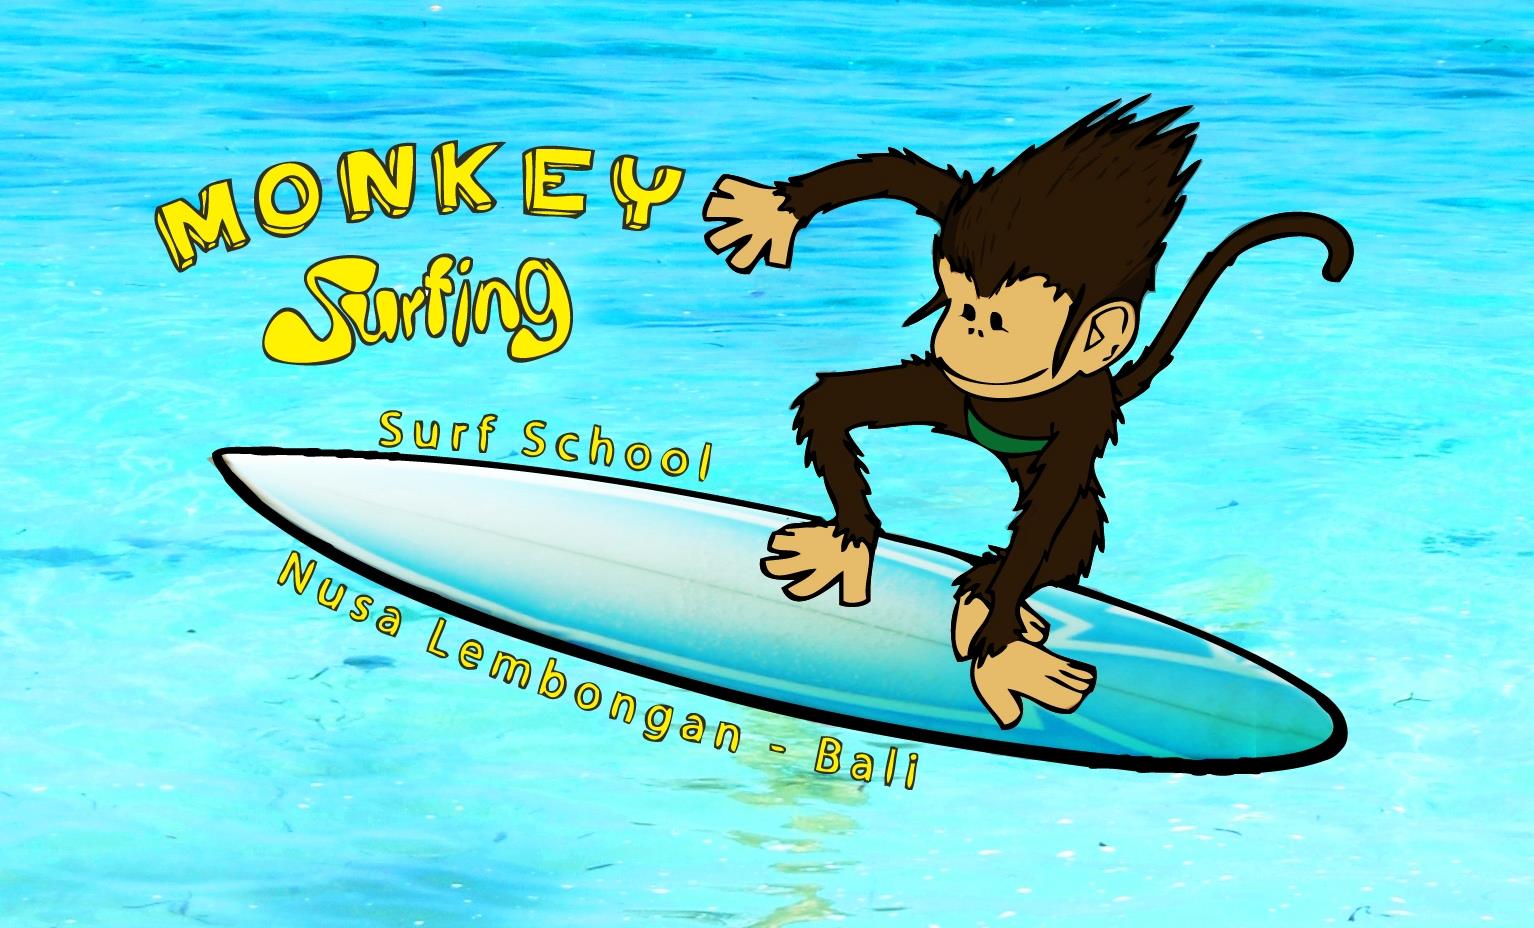 Monkey Surfing Retreat Center Bali